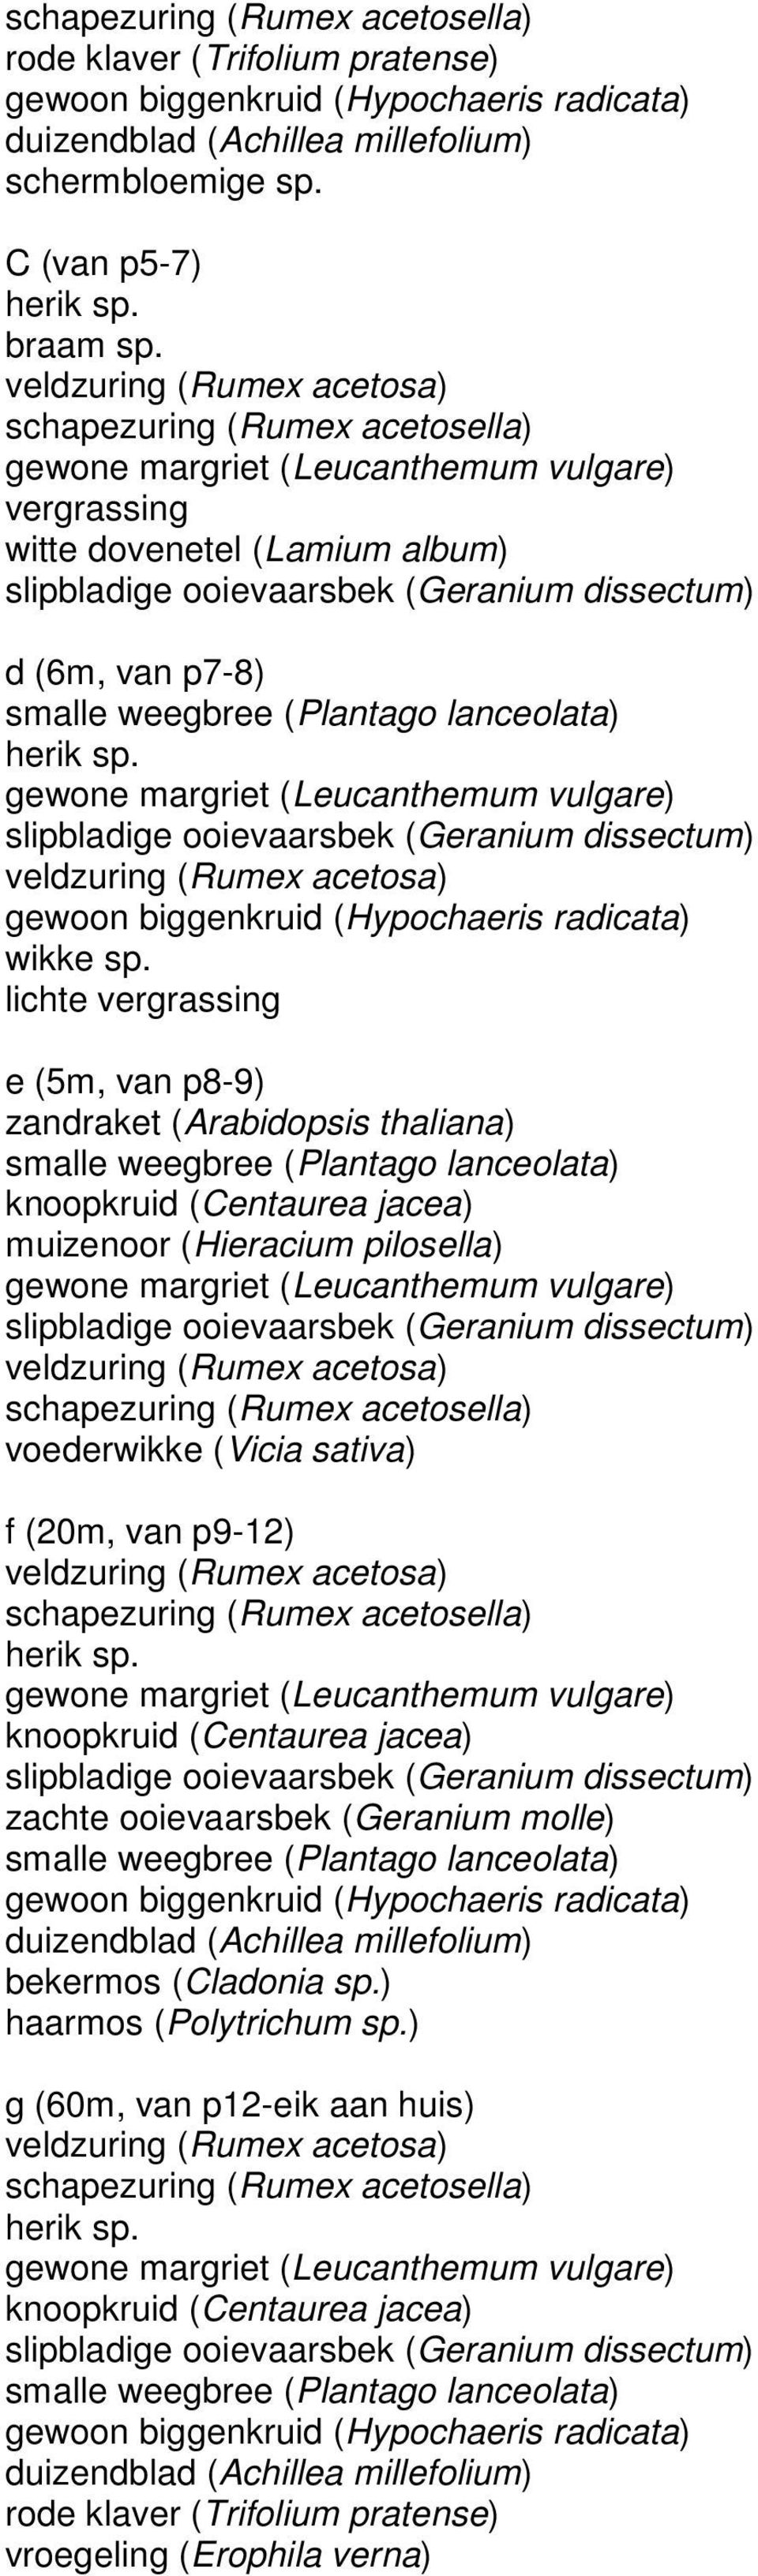 pilosella) voederwikke (Vicia sativa) f (20m, van p9-12) zachte ooievaarsbek (Geranium